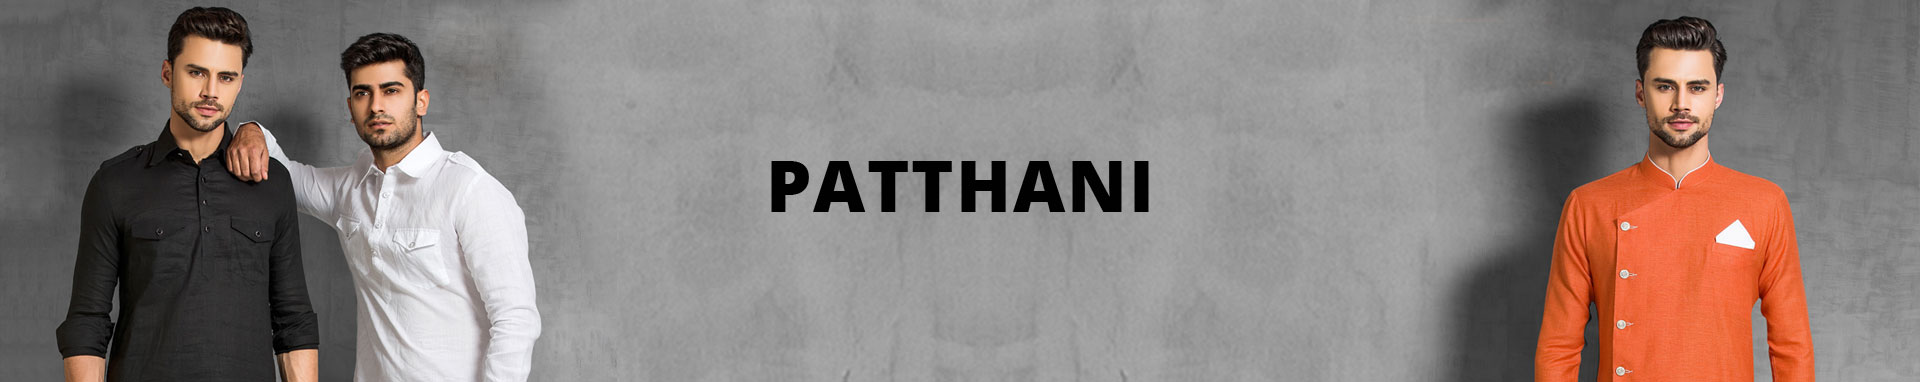 Patthani